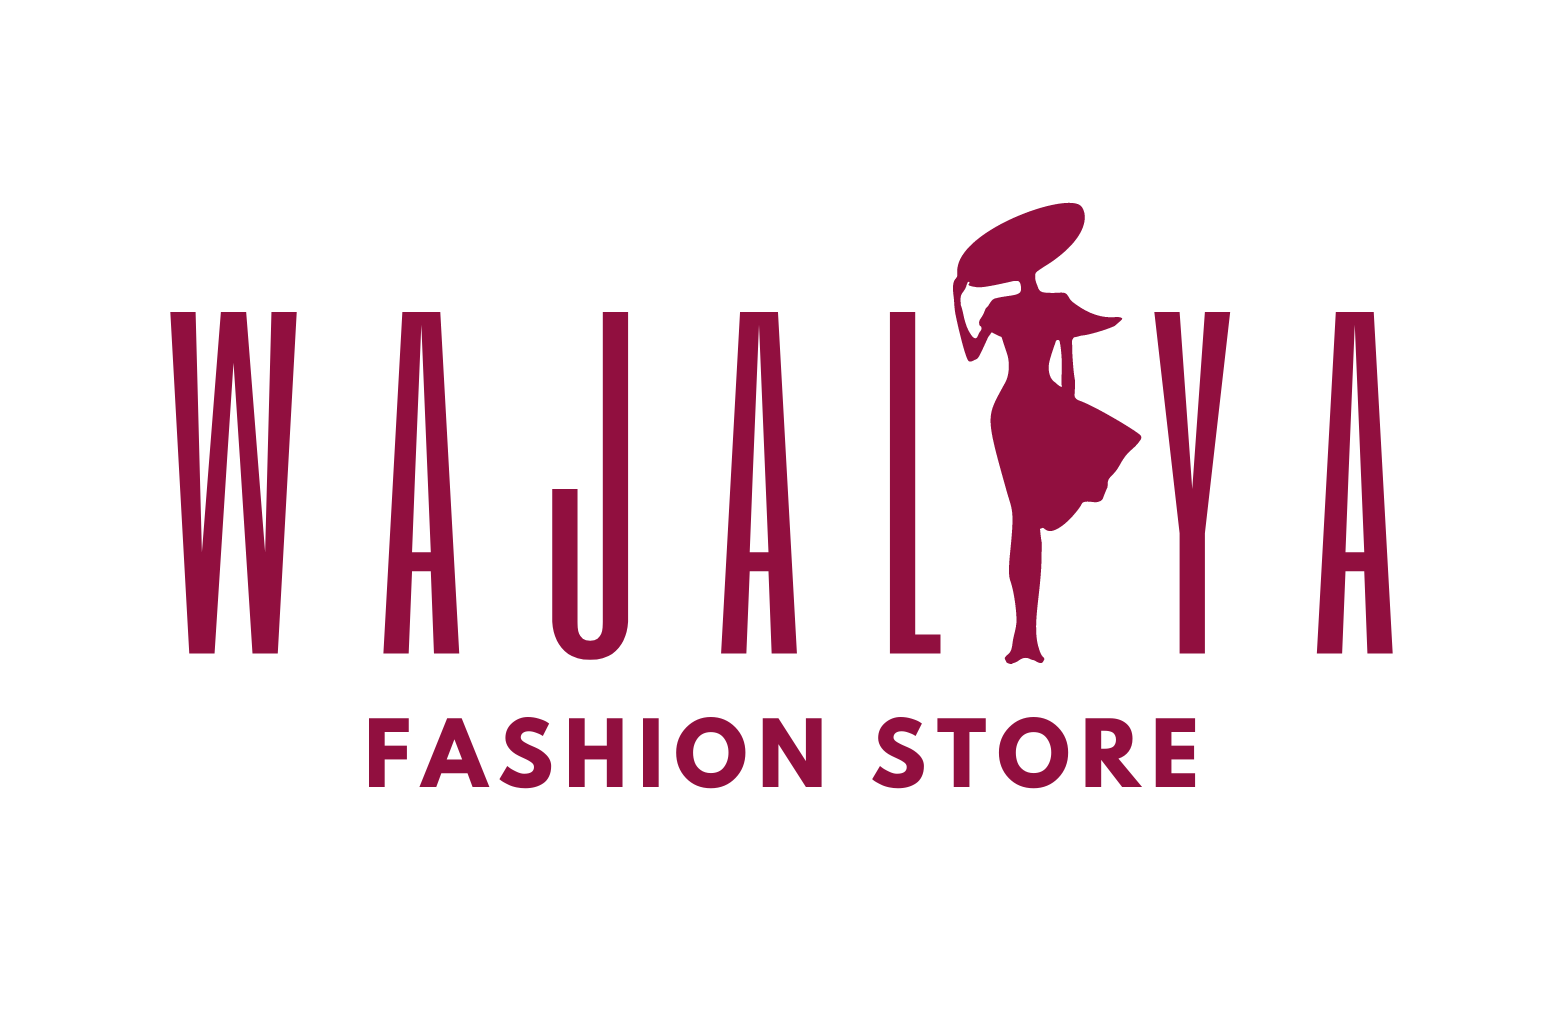 Wajaliya logo